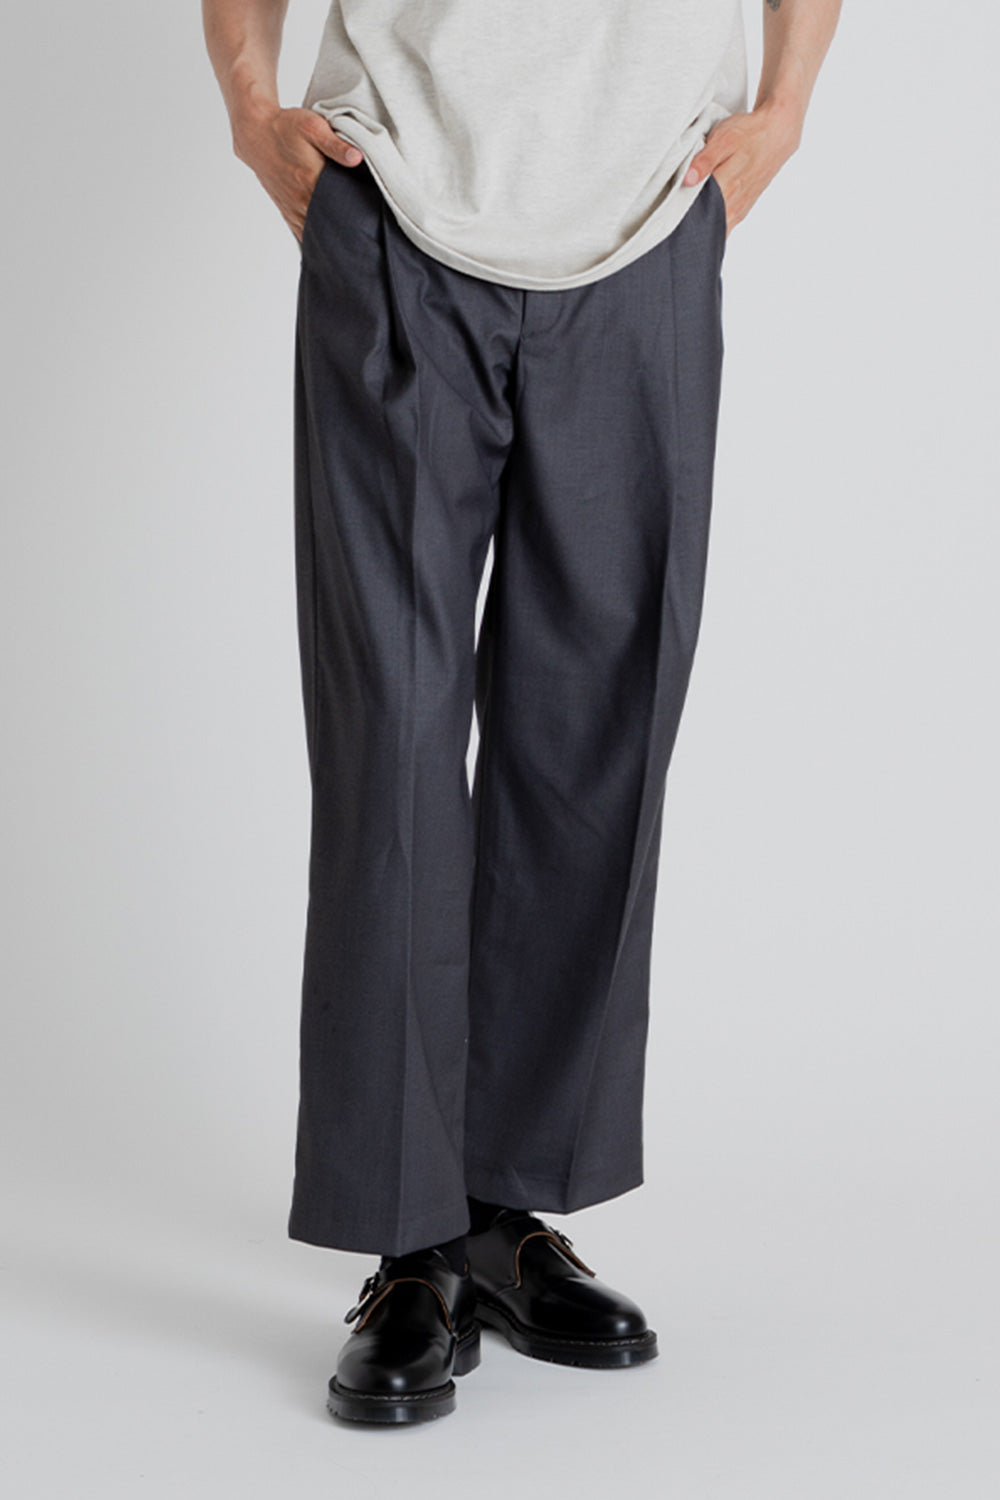 Frizmworks OG One Tuck Wide Slack Pants in Charcoal